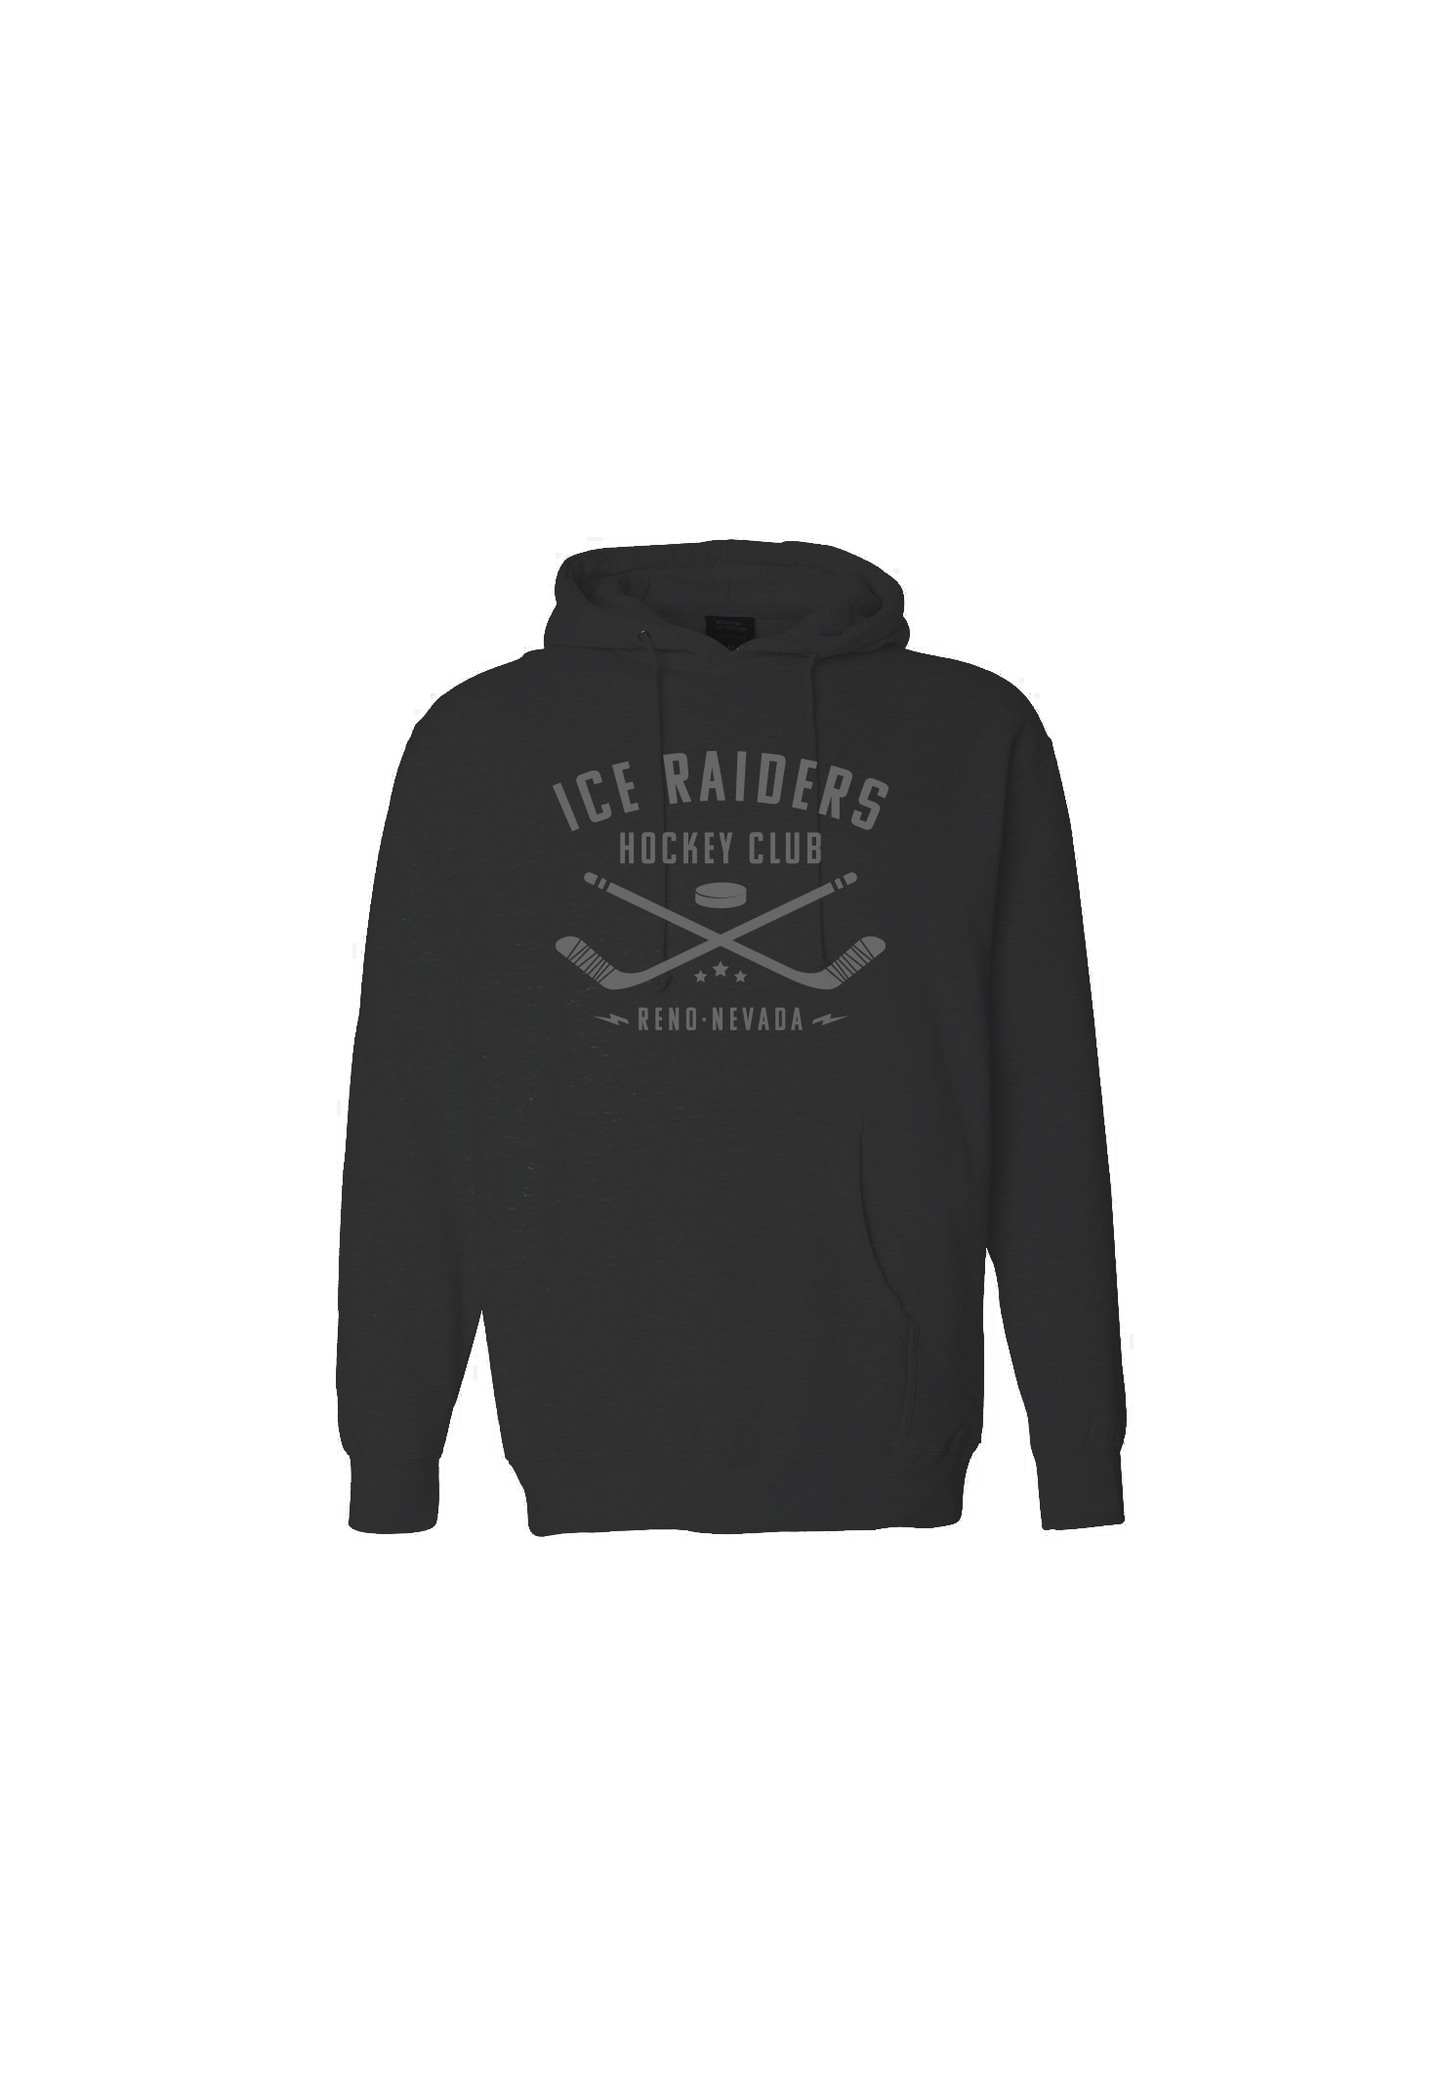 Ice Raiders Cross Checking Sweatshirt